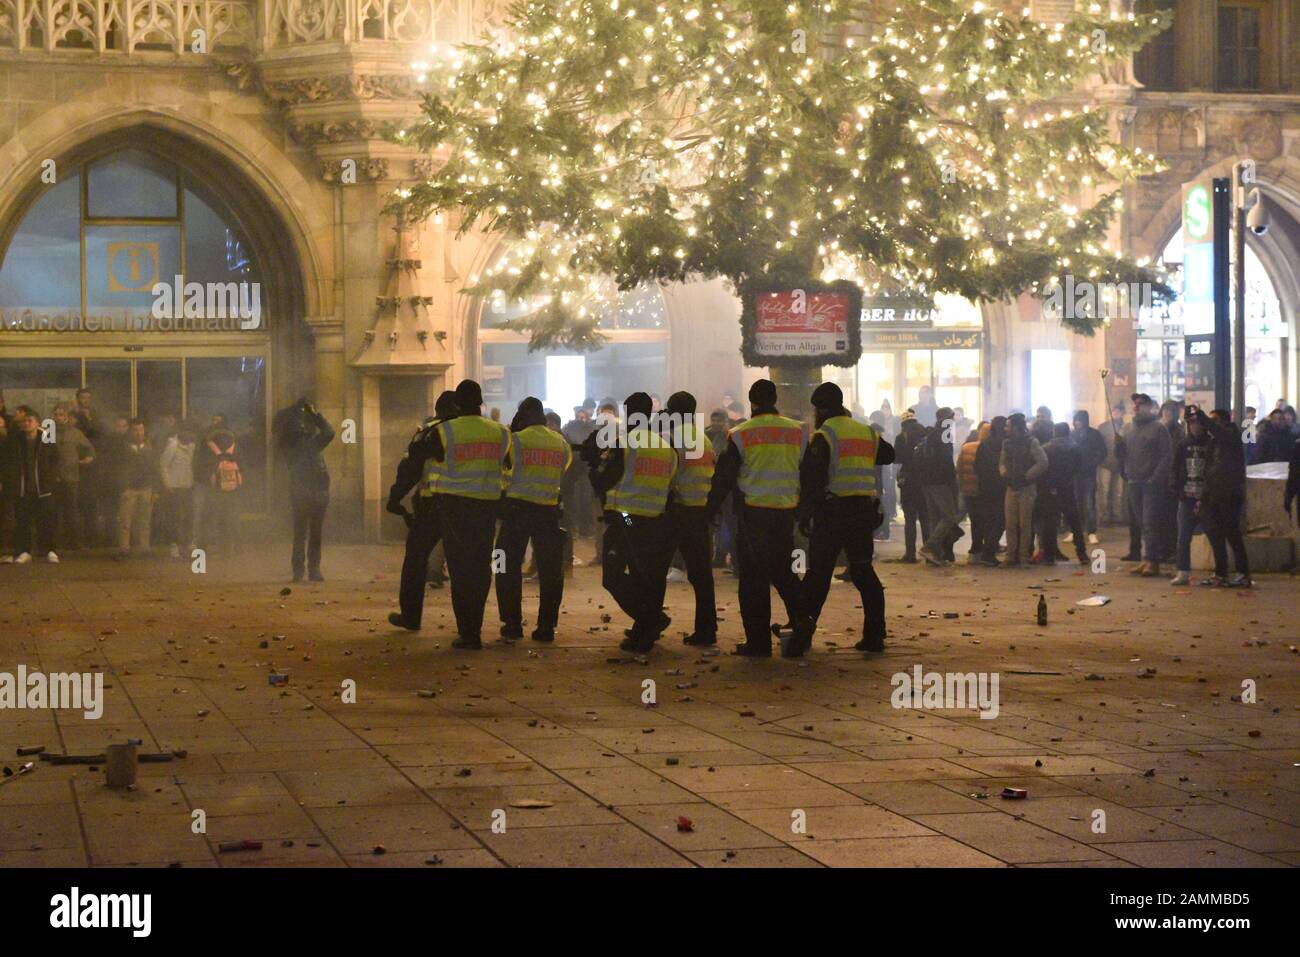 Agenti di polizia alla fine dell'anno 2016/17 al Marienplatz di Monaco. [traduzione automatizzata] Foto Stock